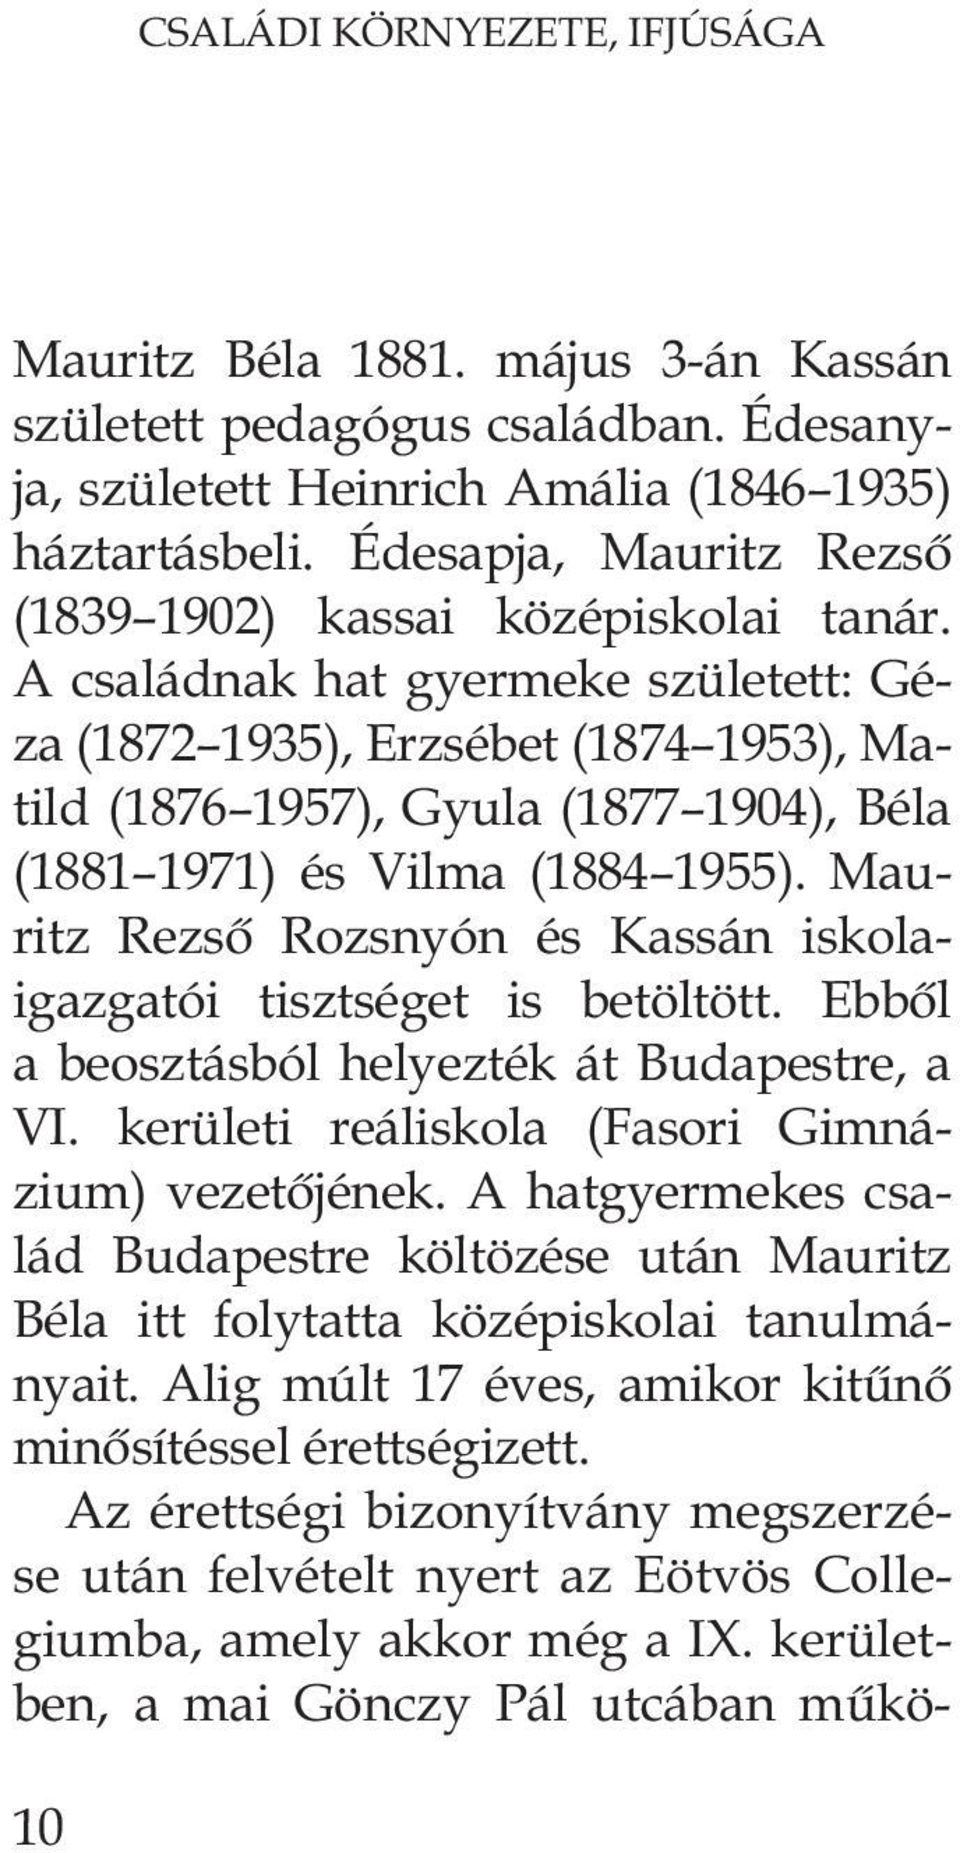 A családnak hat gyermeke született: Géza (1872 1935), Erzsébet (1874 1953), Matild (1876 1957), Gyula (1877 1904), Béla (1881 1971) és Vilma (1884 1955).